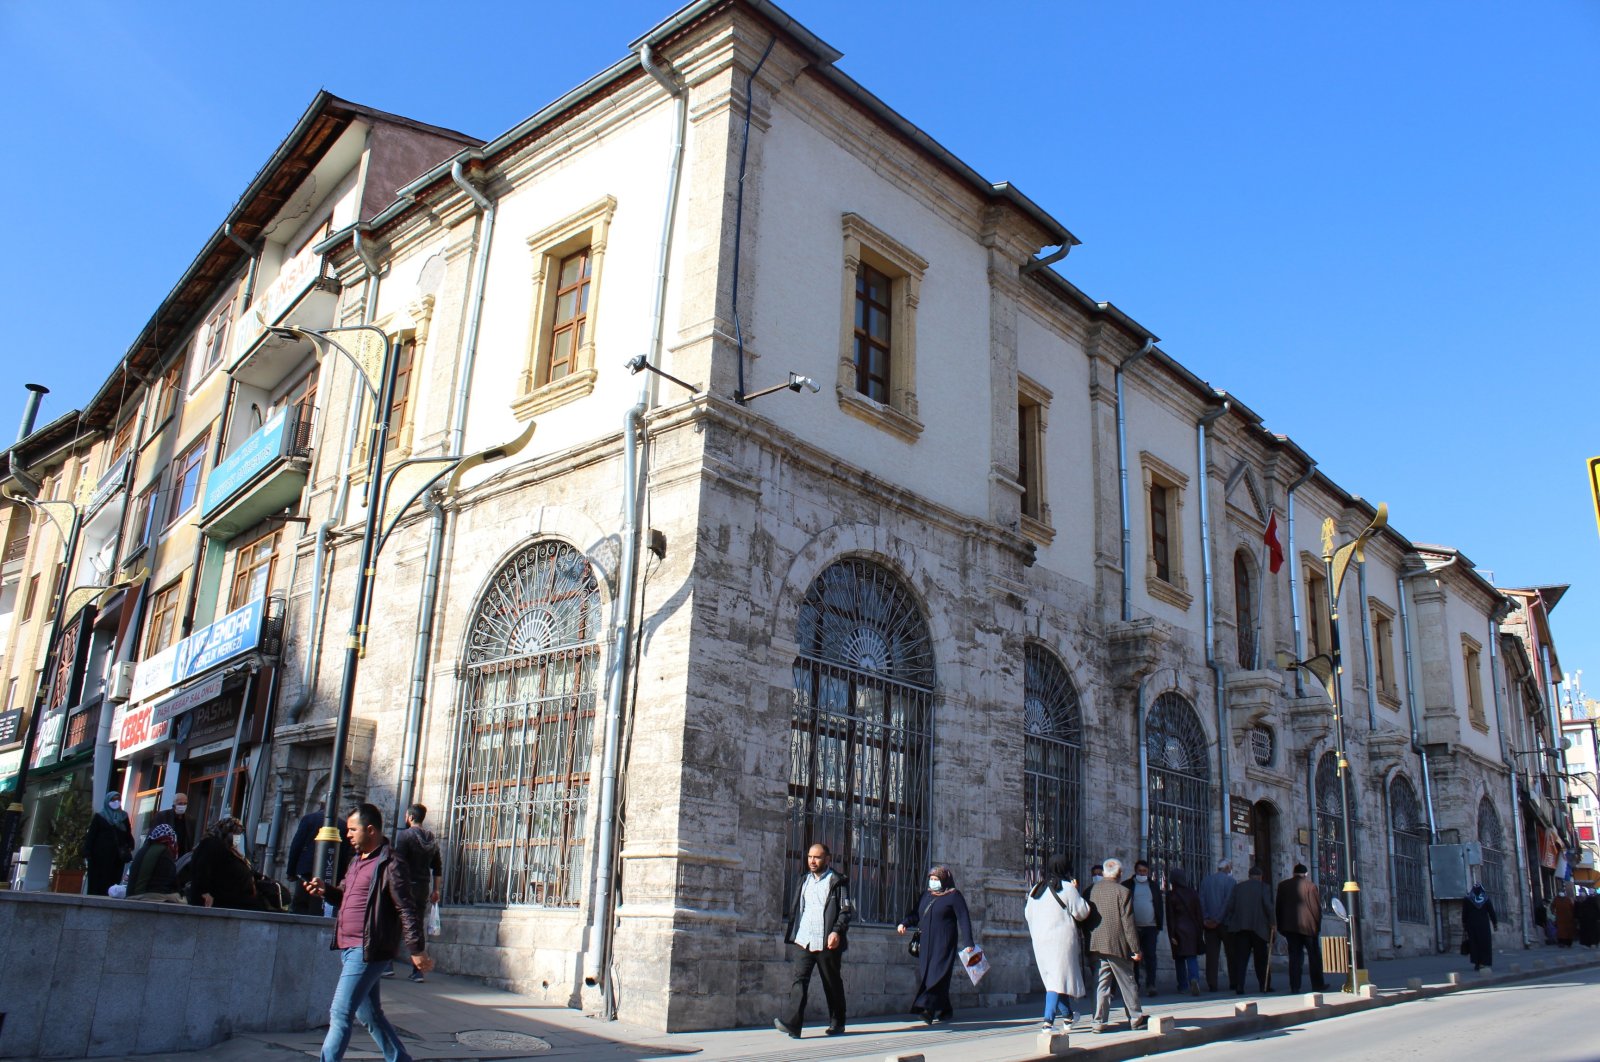 Perpustakaan bersejarah di Sivas Turki menyimpan manuskrip unik